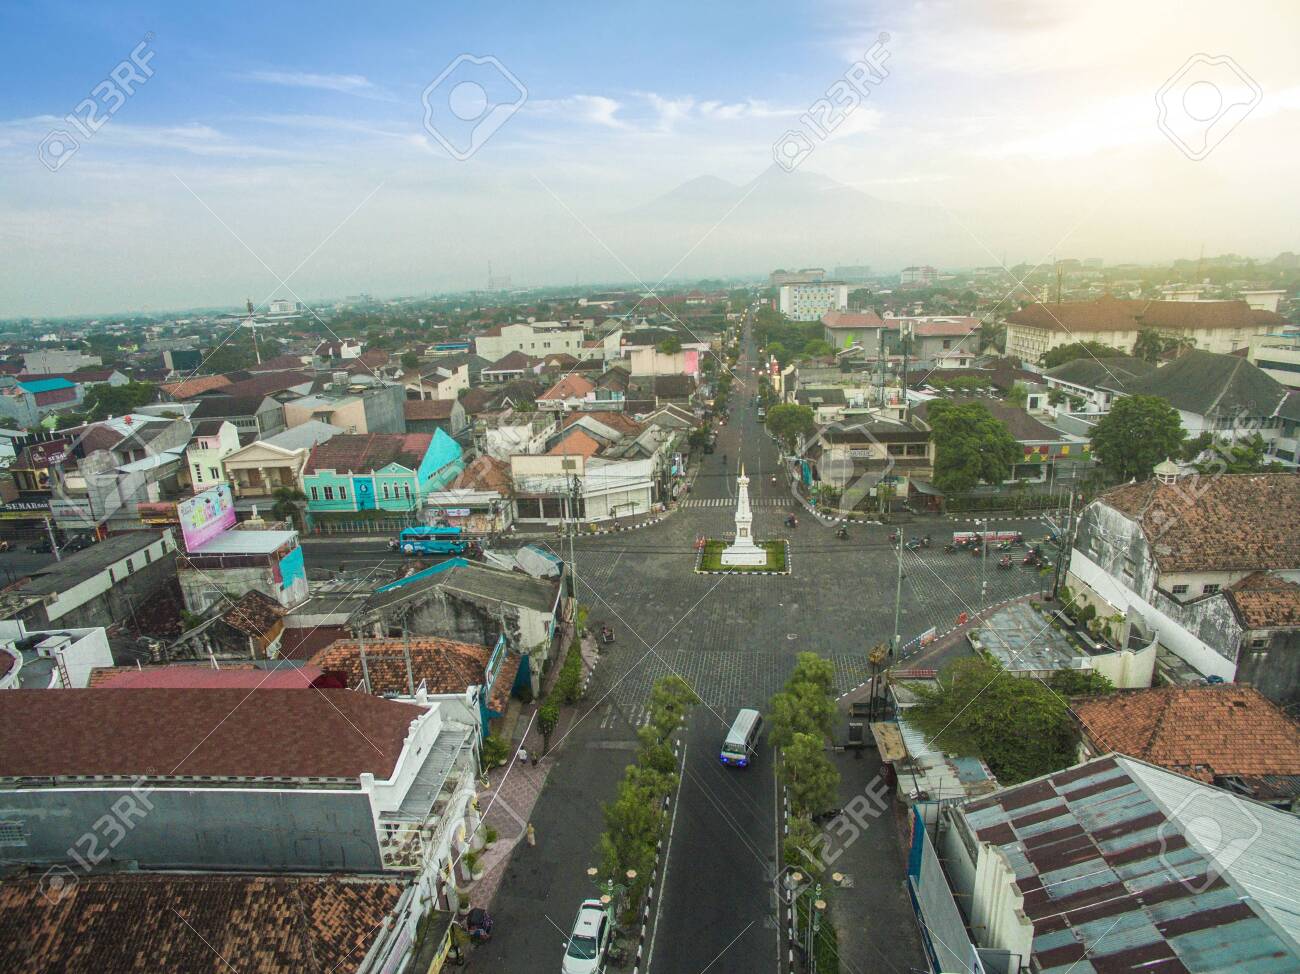 Du lịch Yogyakarta - thủ đô văn hóa của Indonesia (Nguồn: Internet)